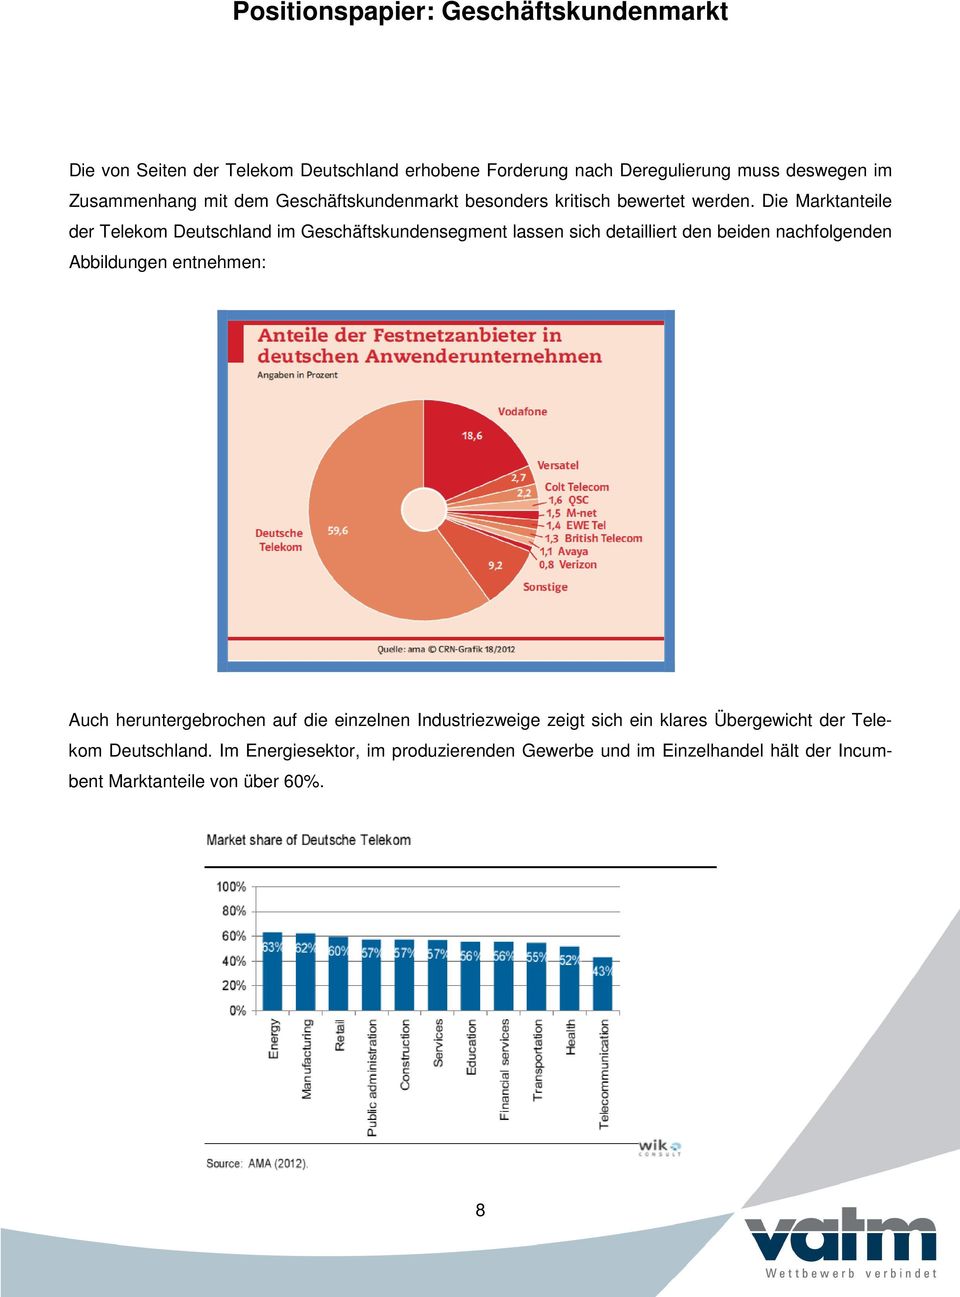 Die Marktanteile der Telekom Deutschland im Geschäftskundensegment lassen sich detailliert den beiden nachfolgenden Abbildungen